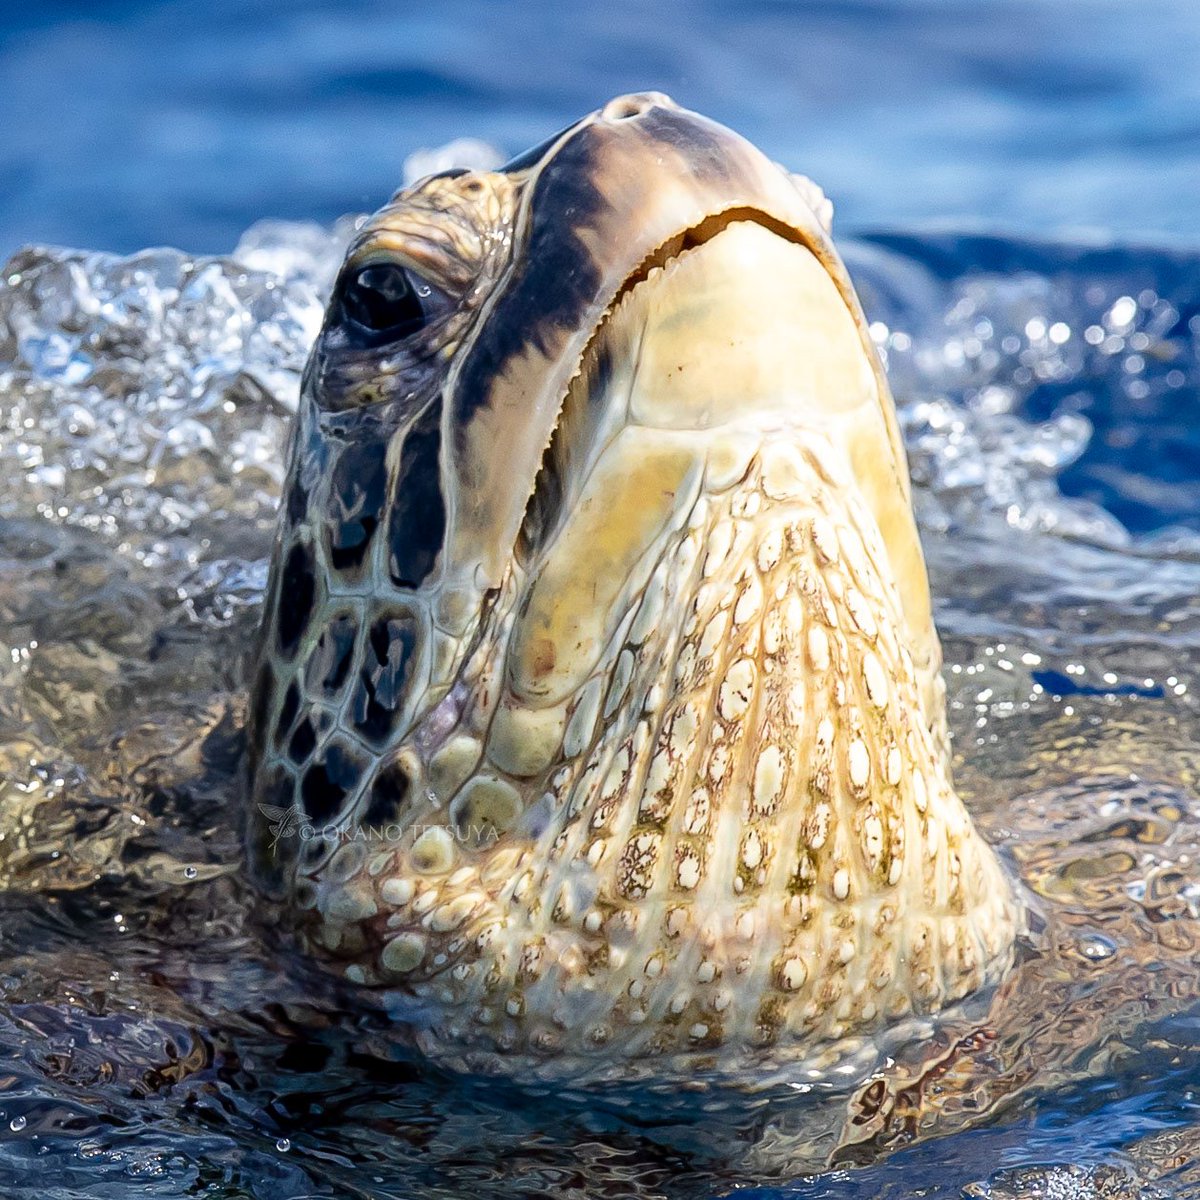 水面に頭を上げて呼吸しているアオウミガメ
#アオウミガメ #GreenSeaTurtle #小笠原諸島